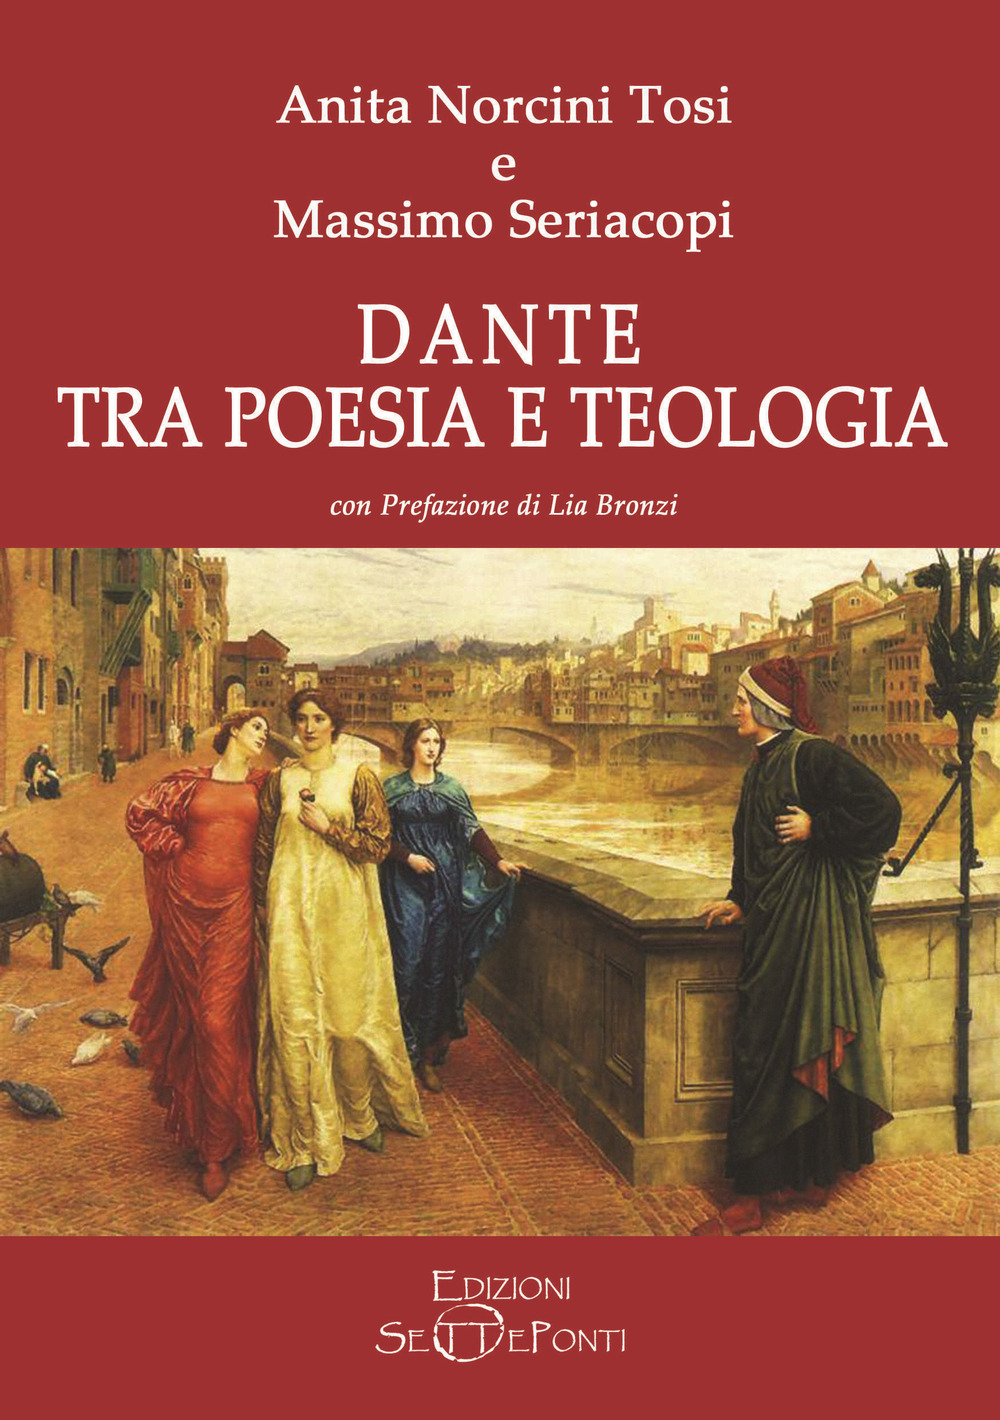 Image of Dante tra poesia e teologia